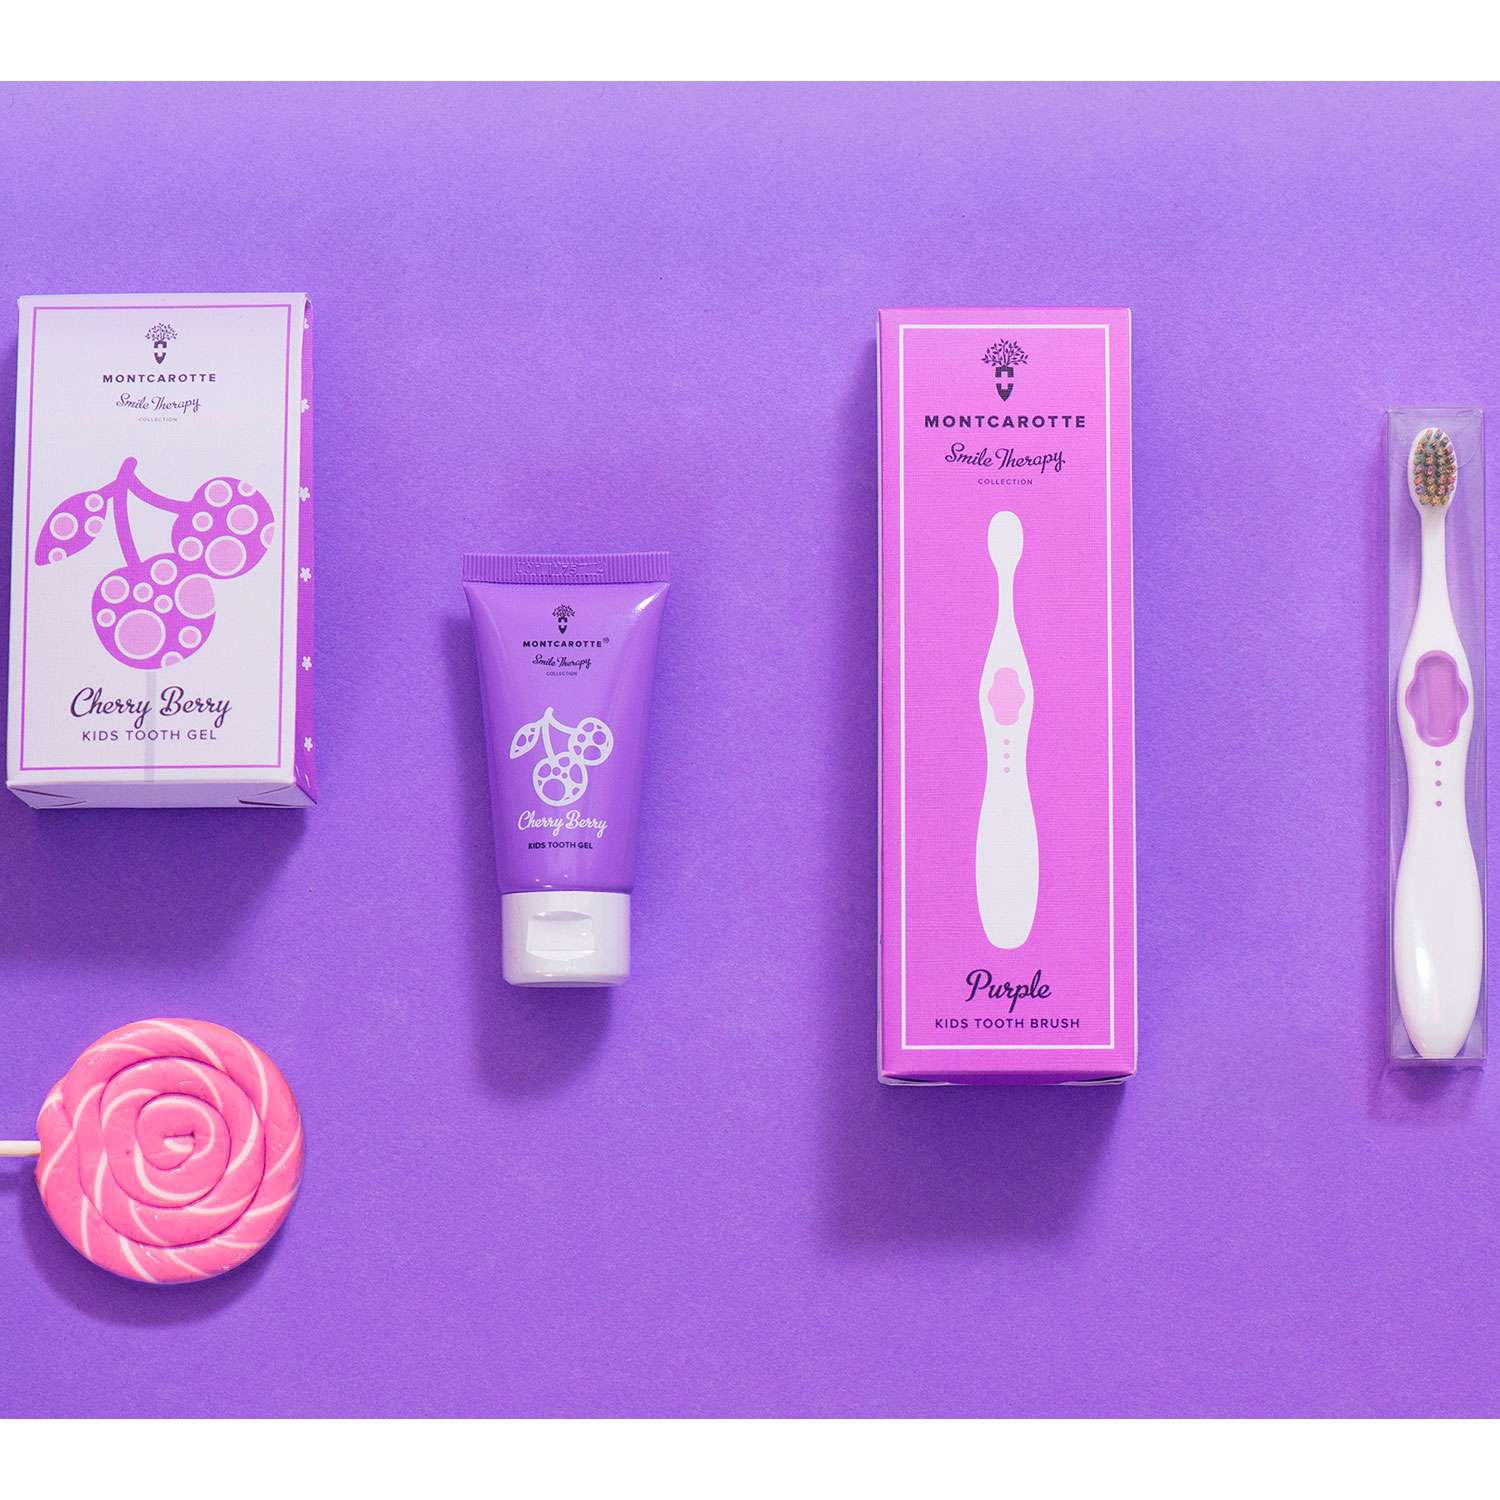 Подарочный набор Montcarotte гелеообразная зубная паста Ягодка Вишня + Зубная щетка Фиолетовая - фото 21